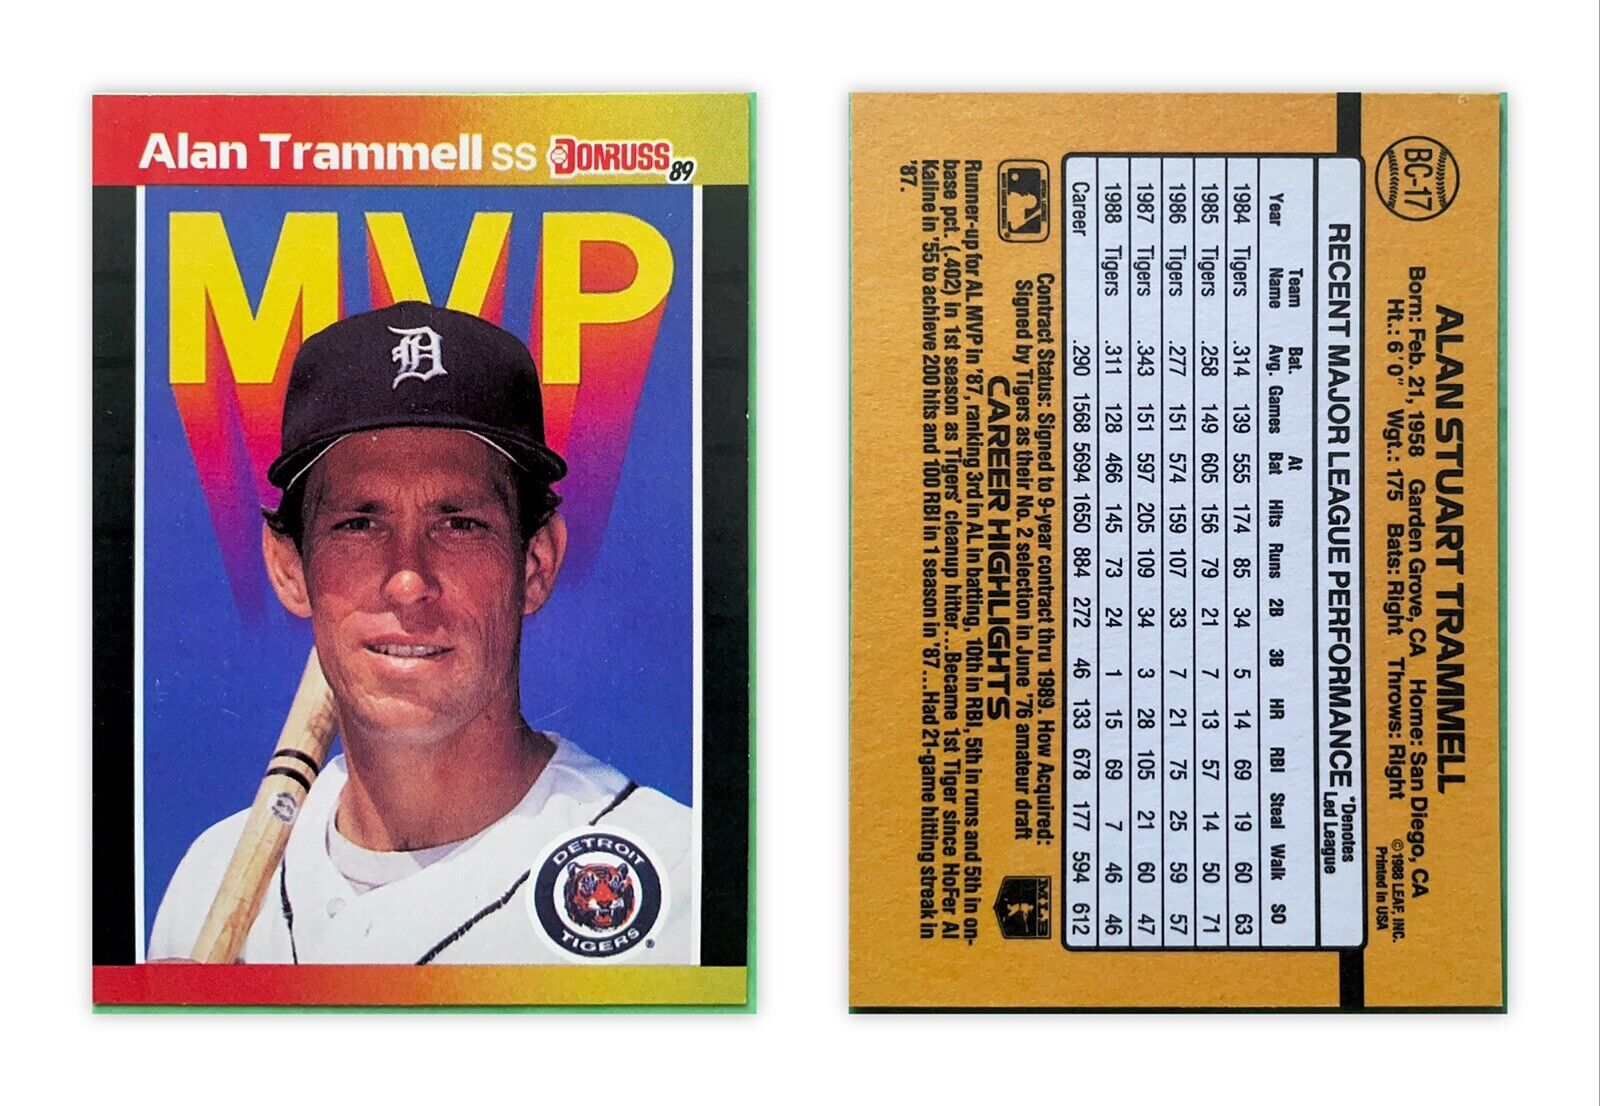 baseball card - Donruss 89 - Alan Trammel #BC-17 MVP card